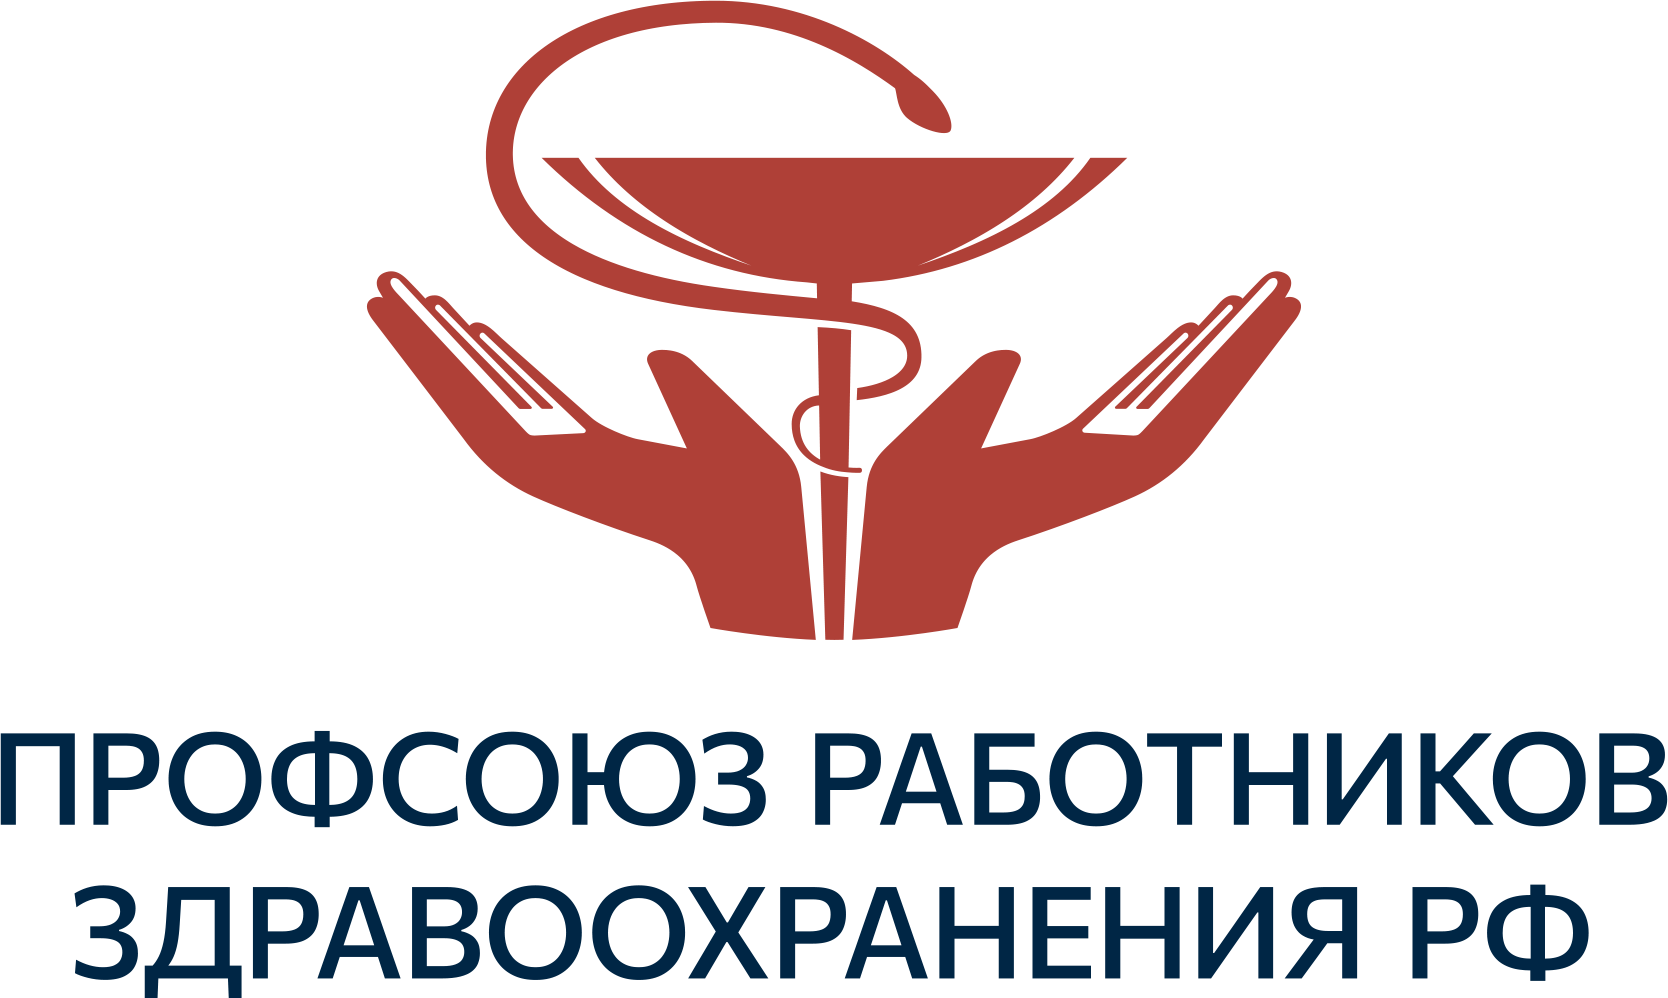 Якутская республиканская организация профсоюза работников здравоохранения РФ